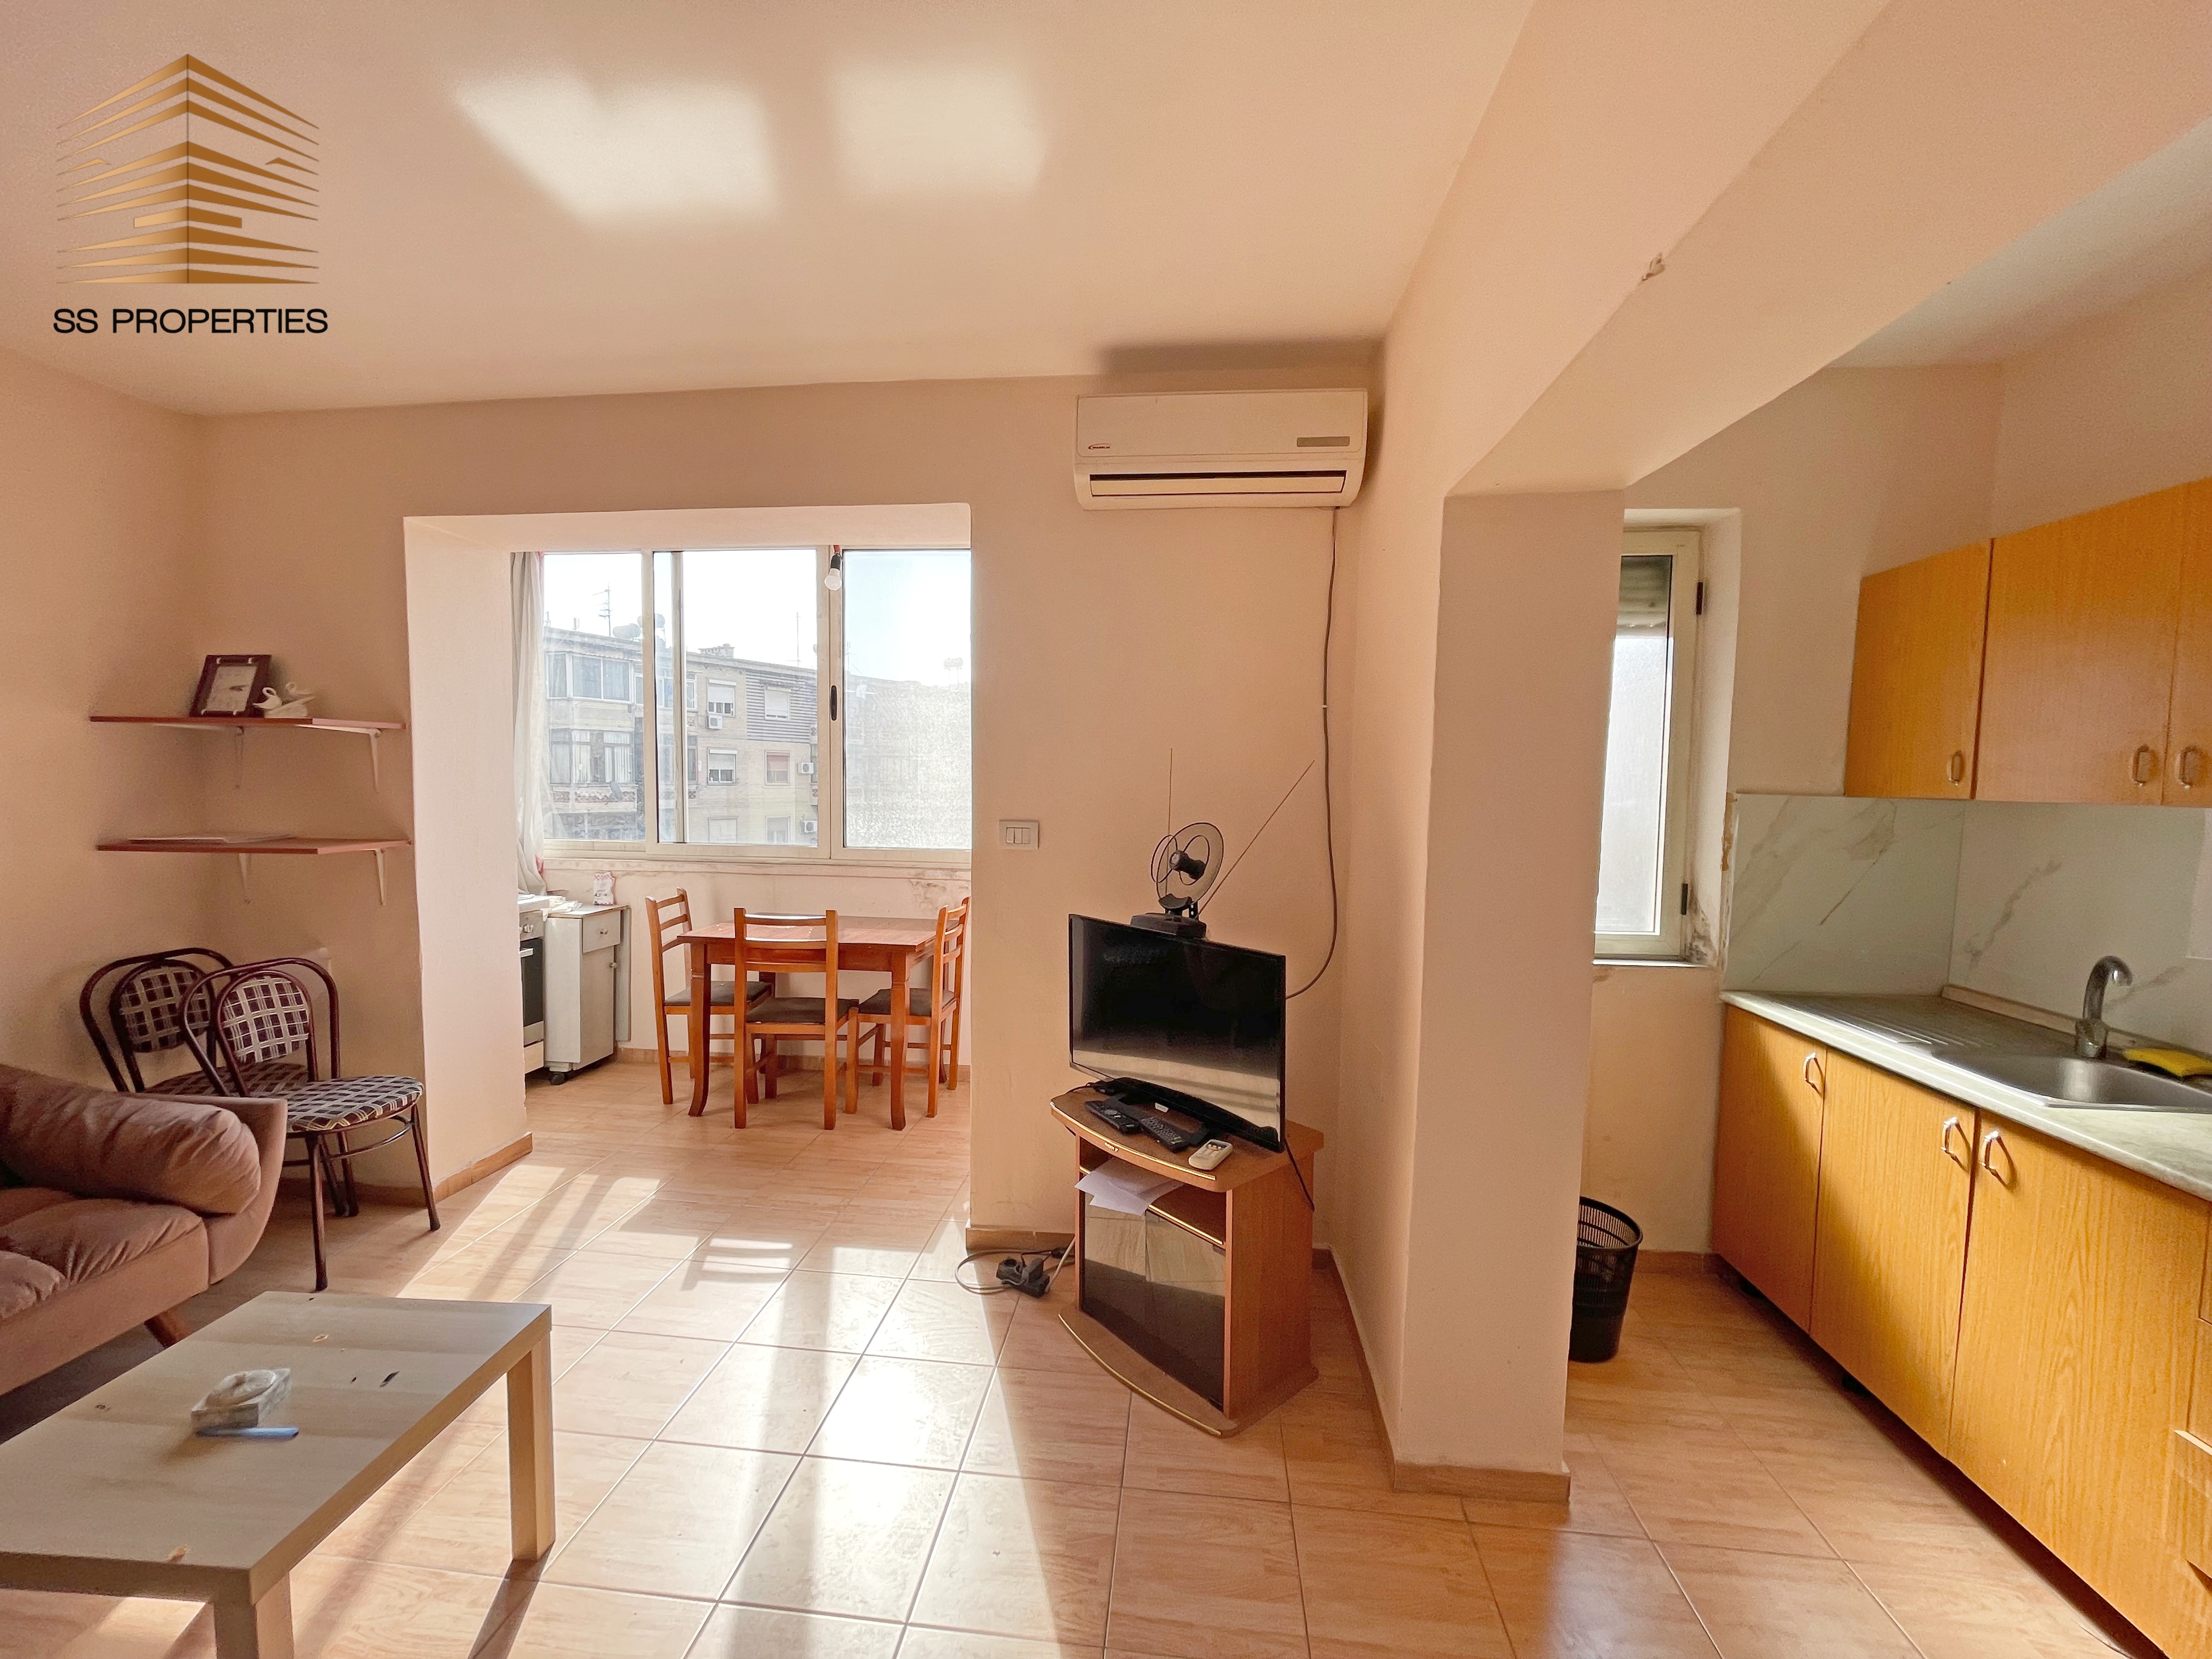 Foto e Apartment në shitje Brryl, Rruga Arkitekt Kasemi, Tiranë